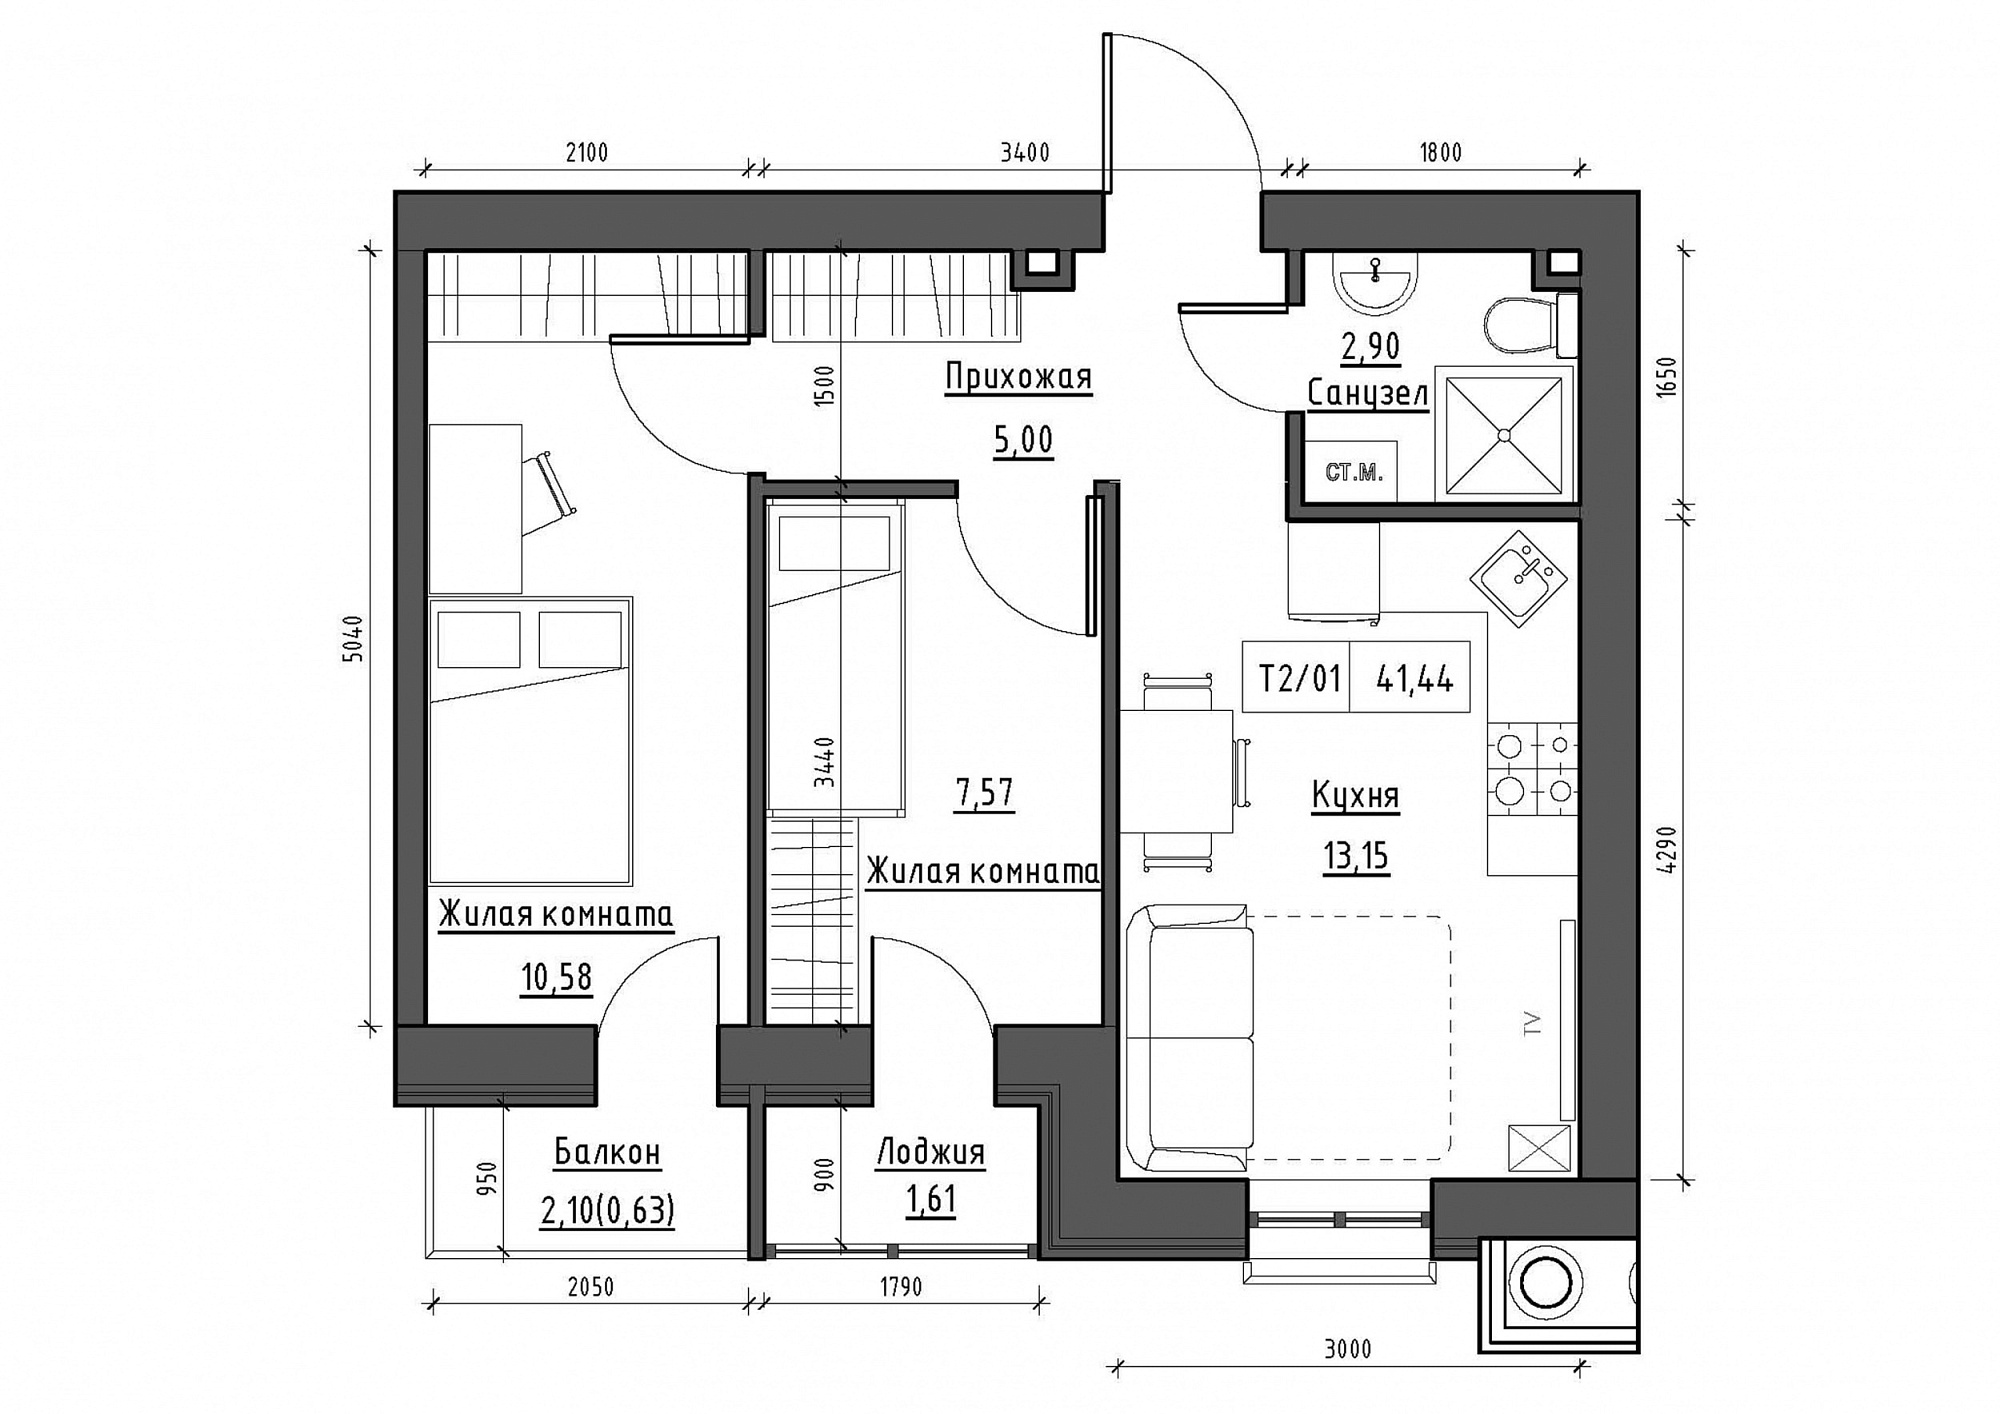 Планировка 2-к квартира площей 41.44м2, KS-011-03/0011.